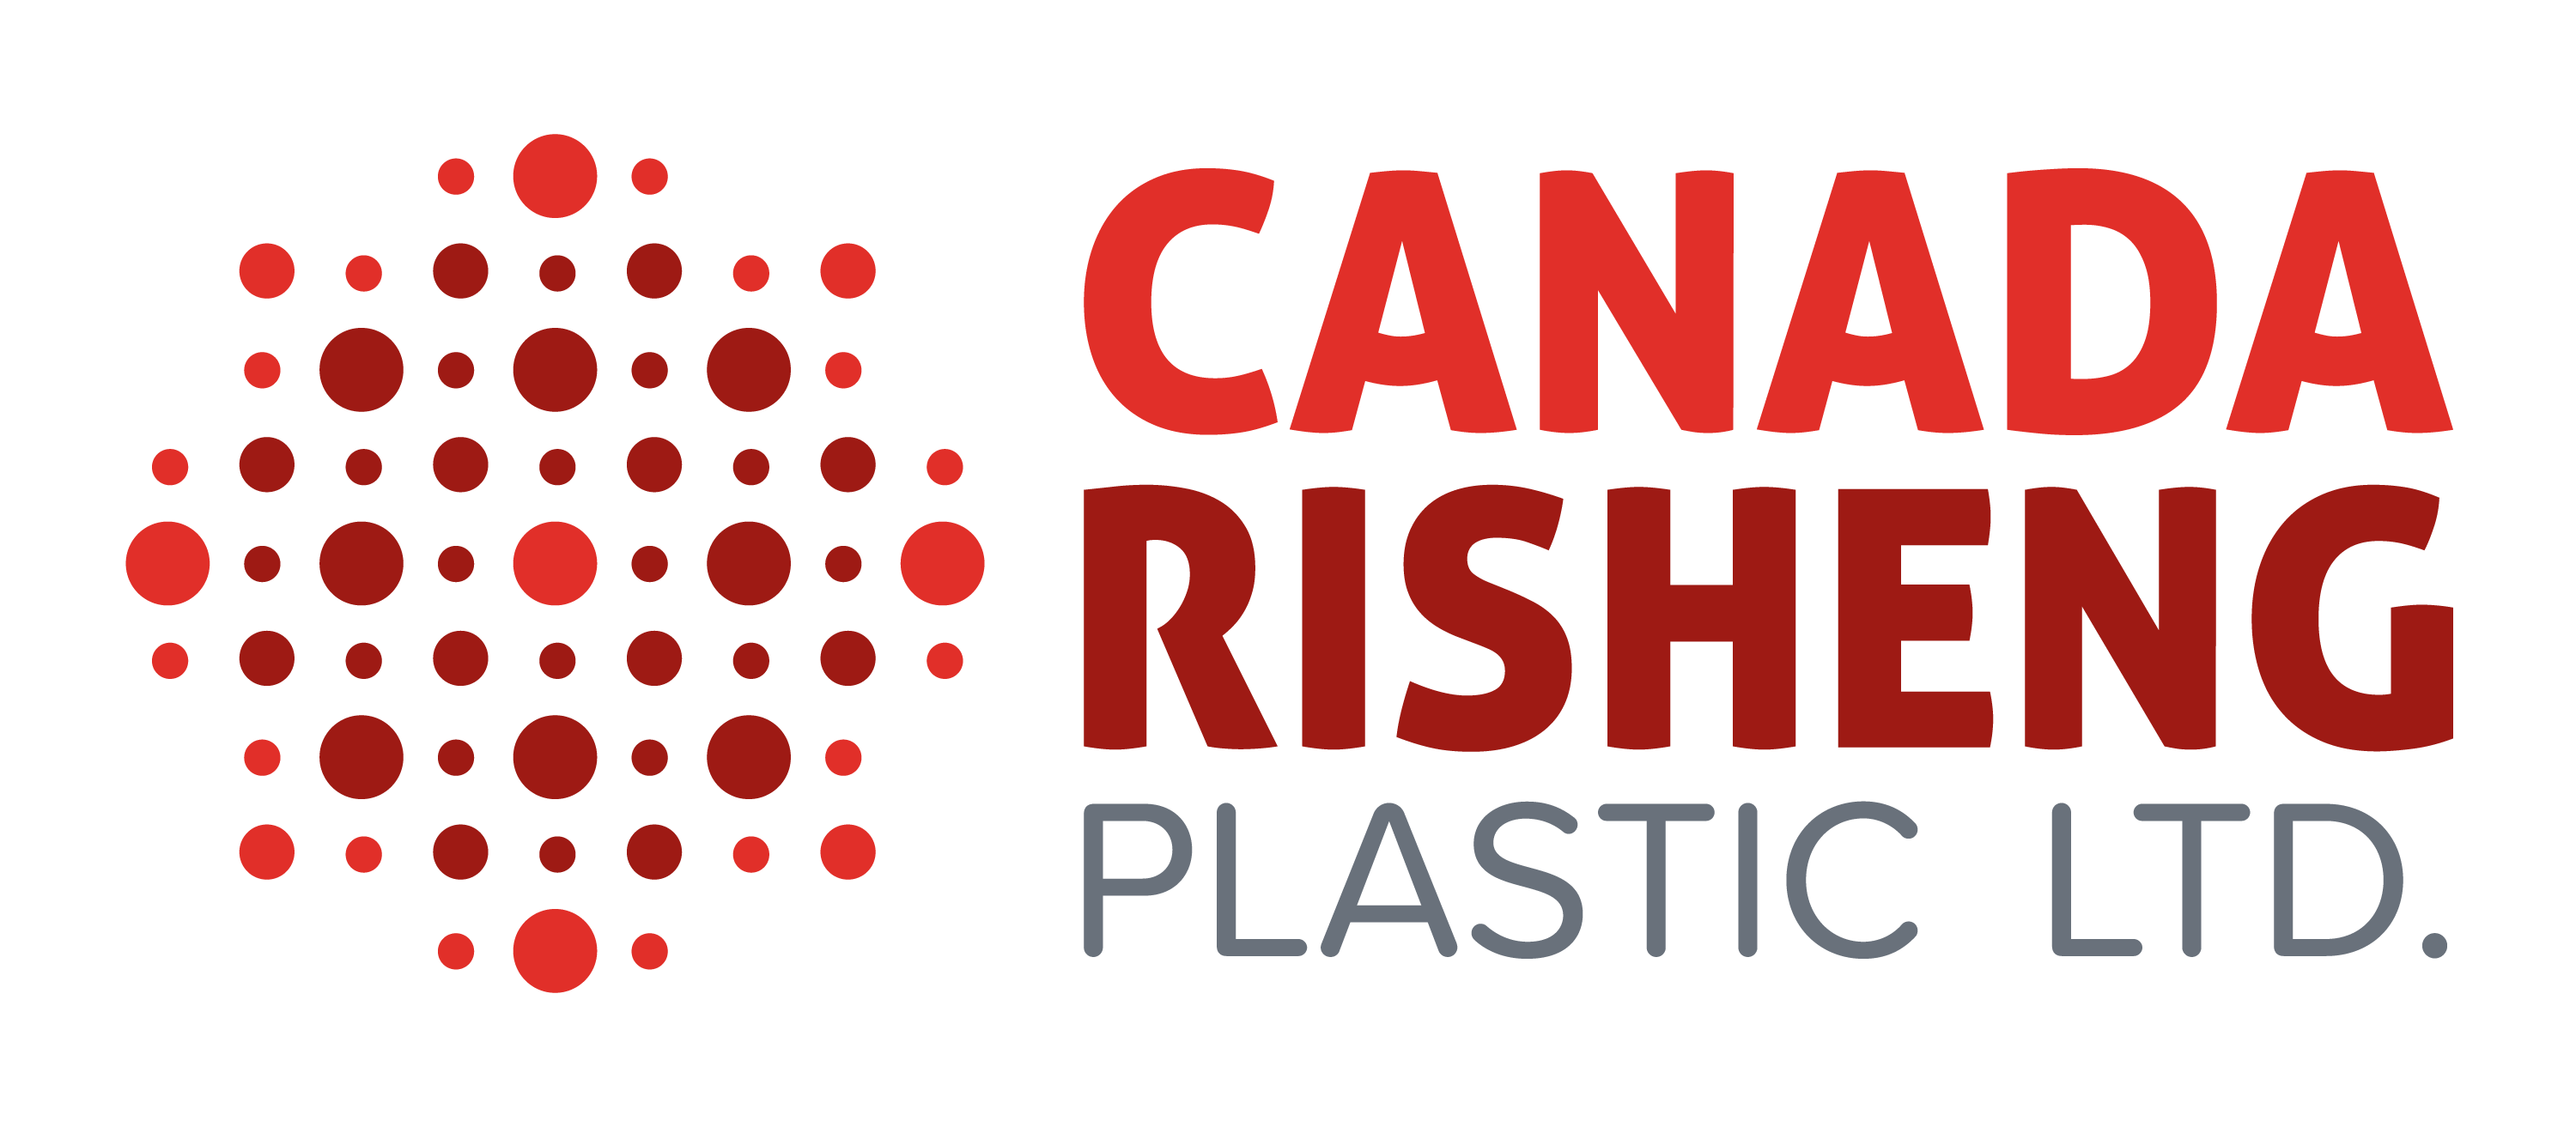 Canada Risheng Plastic Ltd.